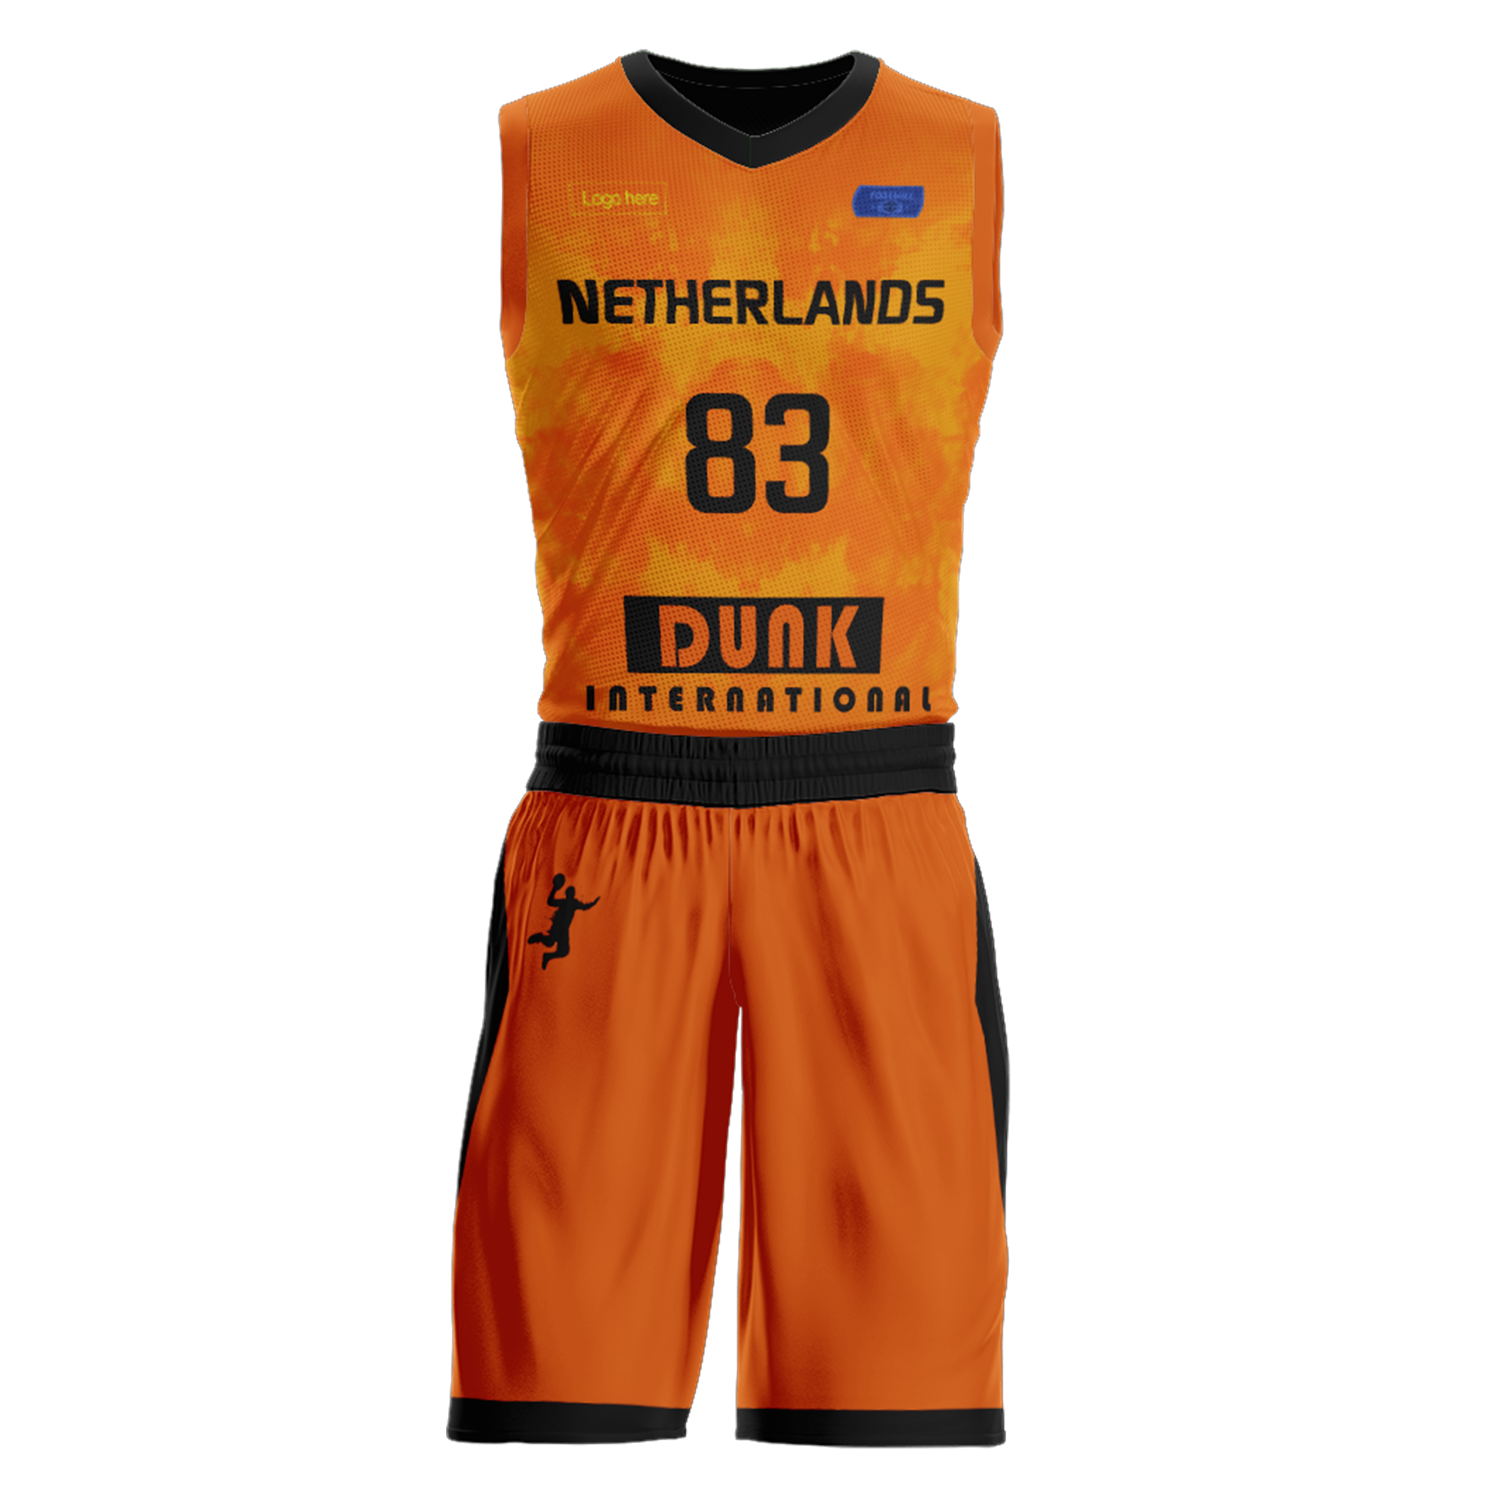 Ternos de basquete personalizados da seleção holandesa